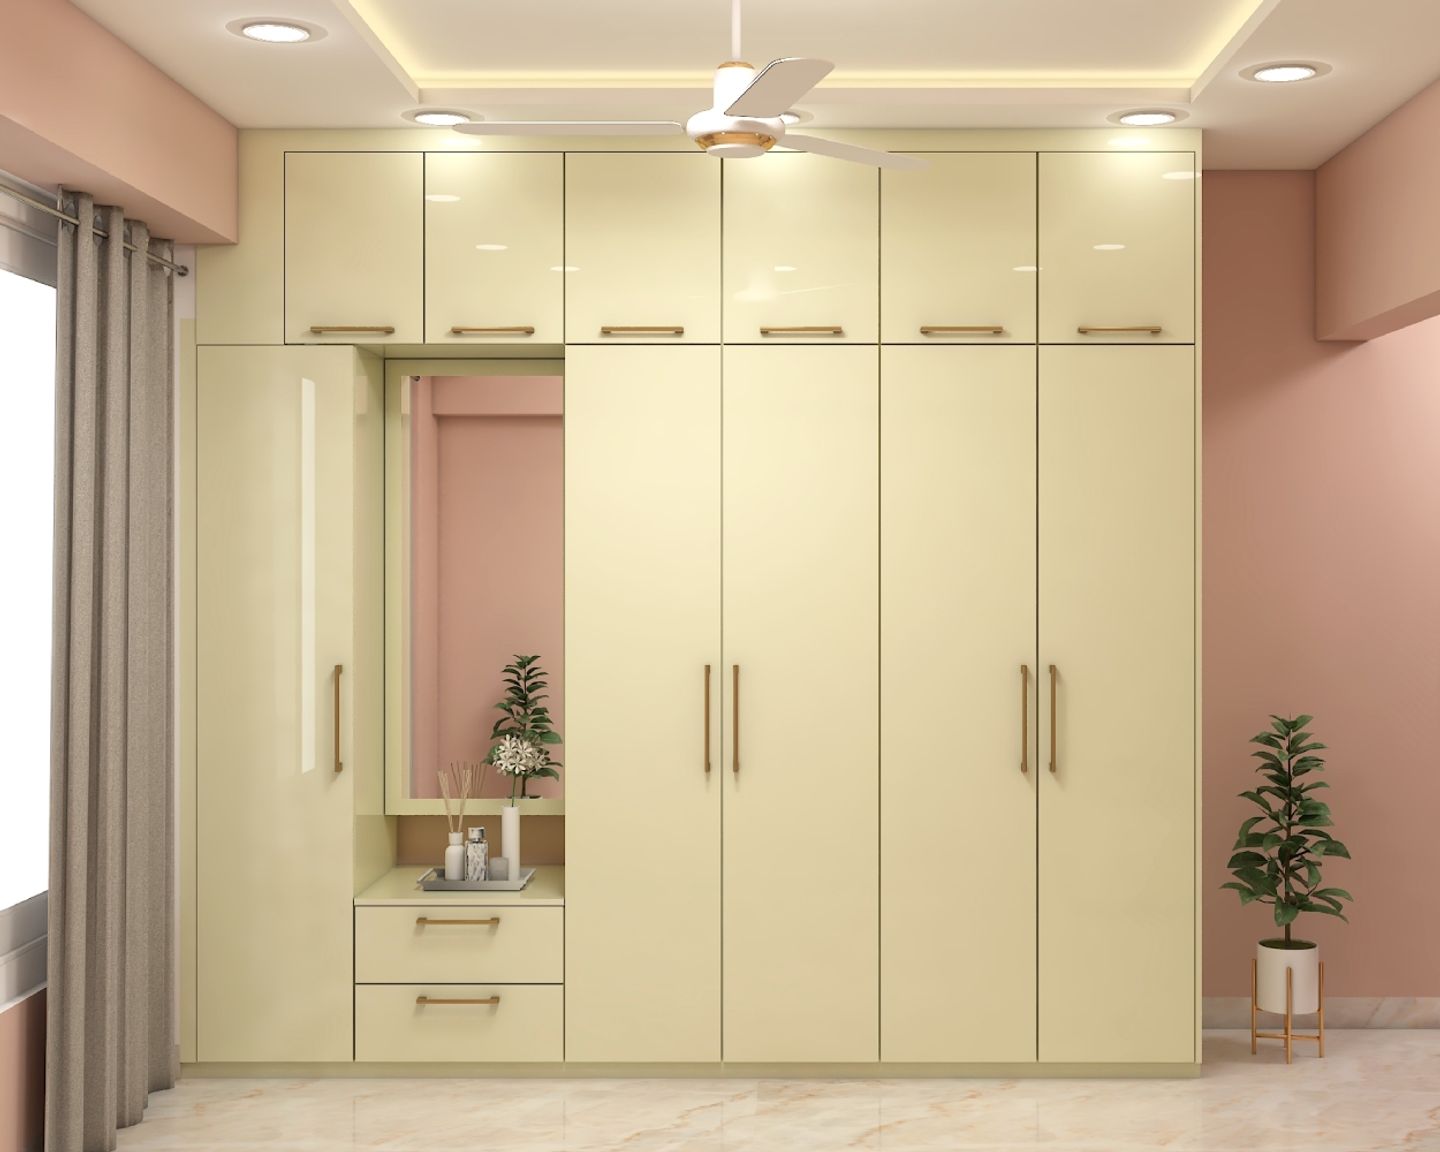 5-Door Swing Wardrobe Design With Mirror In Cream Tones - Livspace